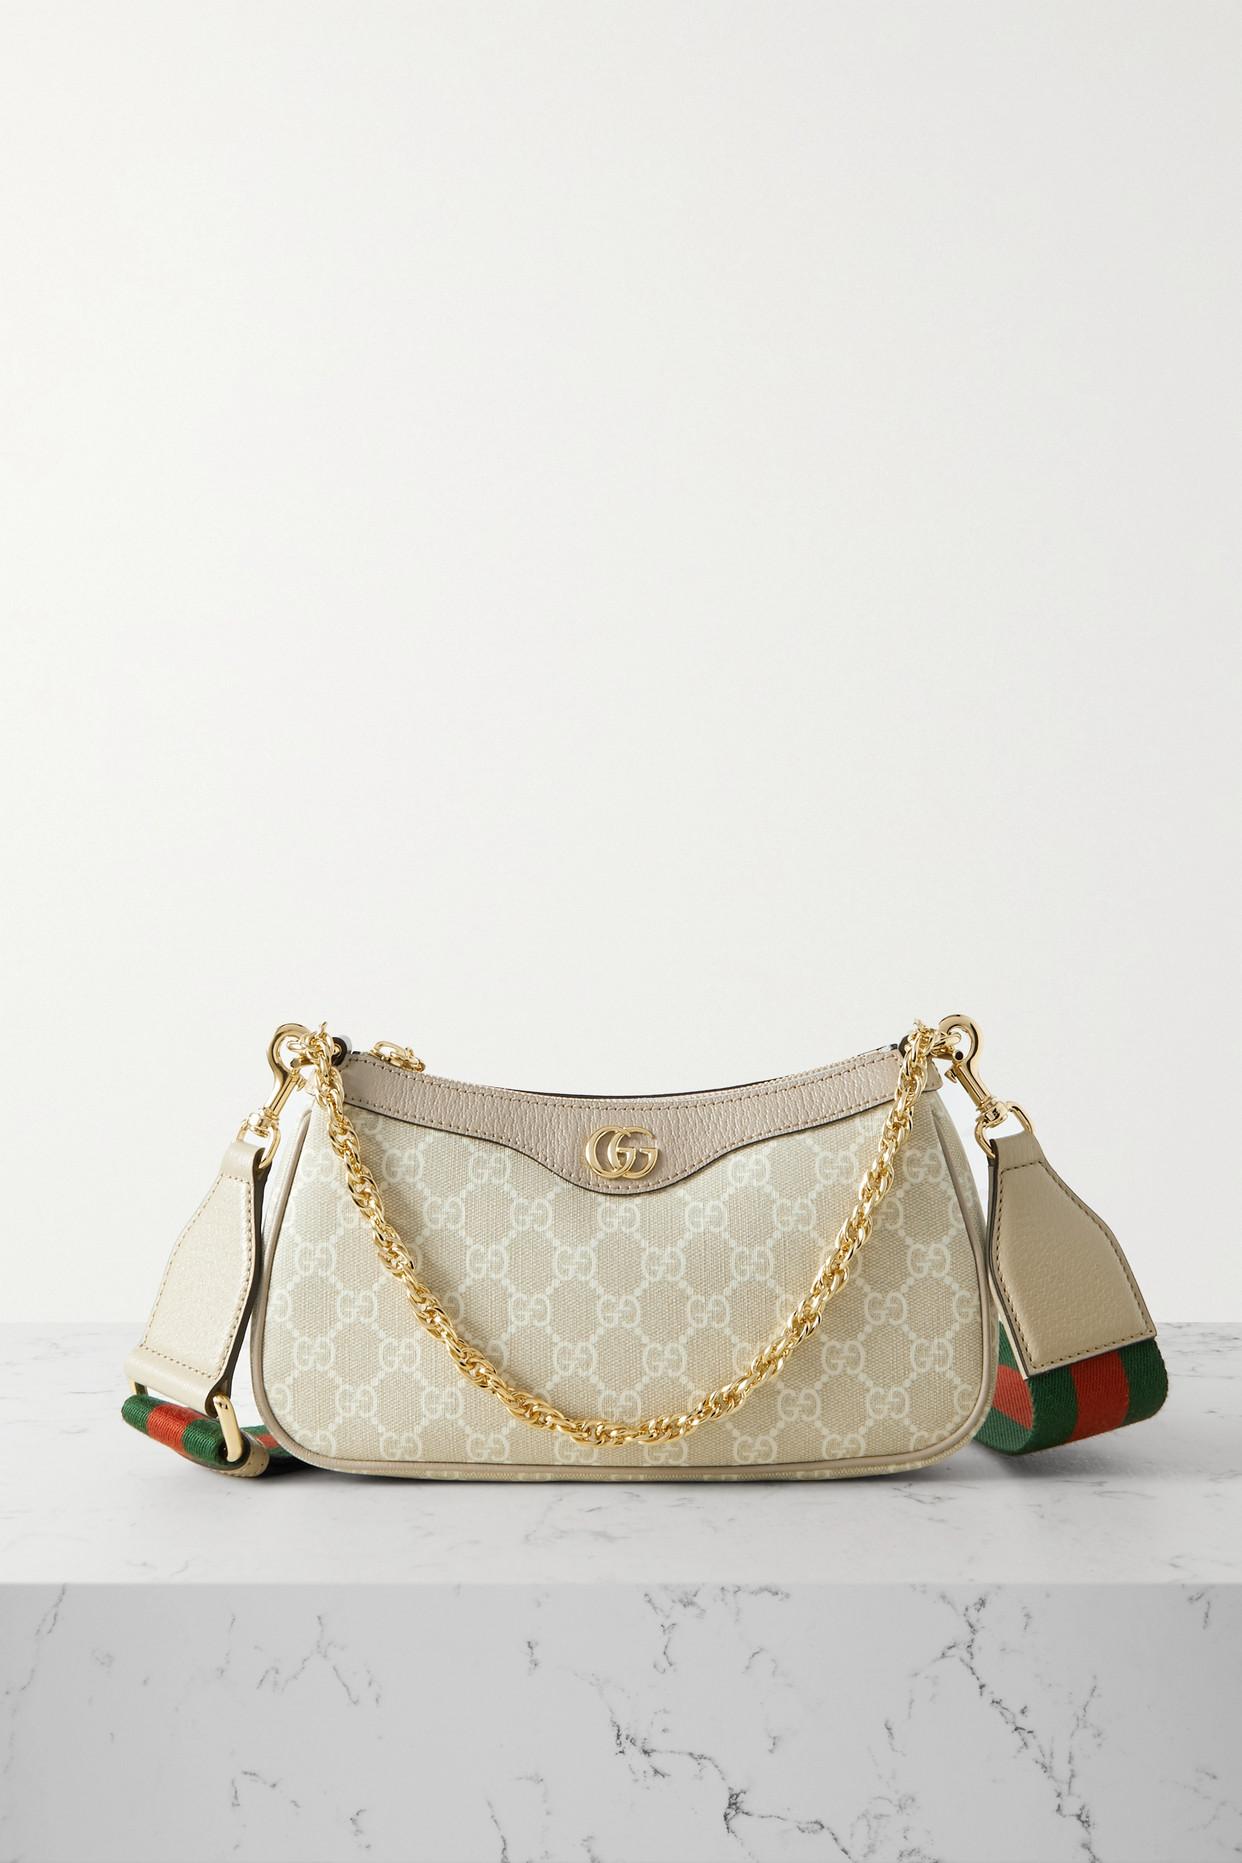 Gucci Ophidia embellished textured leather-trimmed printed coated-canvas shoulder bag - Women - Beige Shoulder Bags